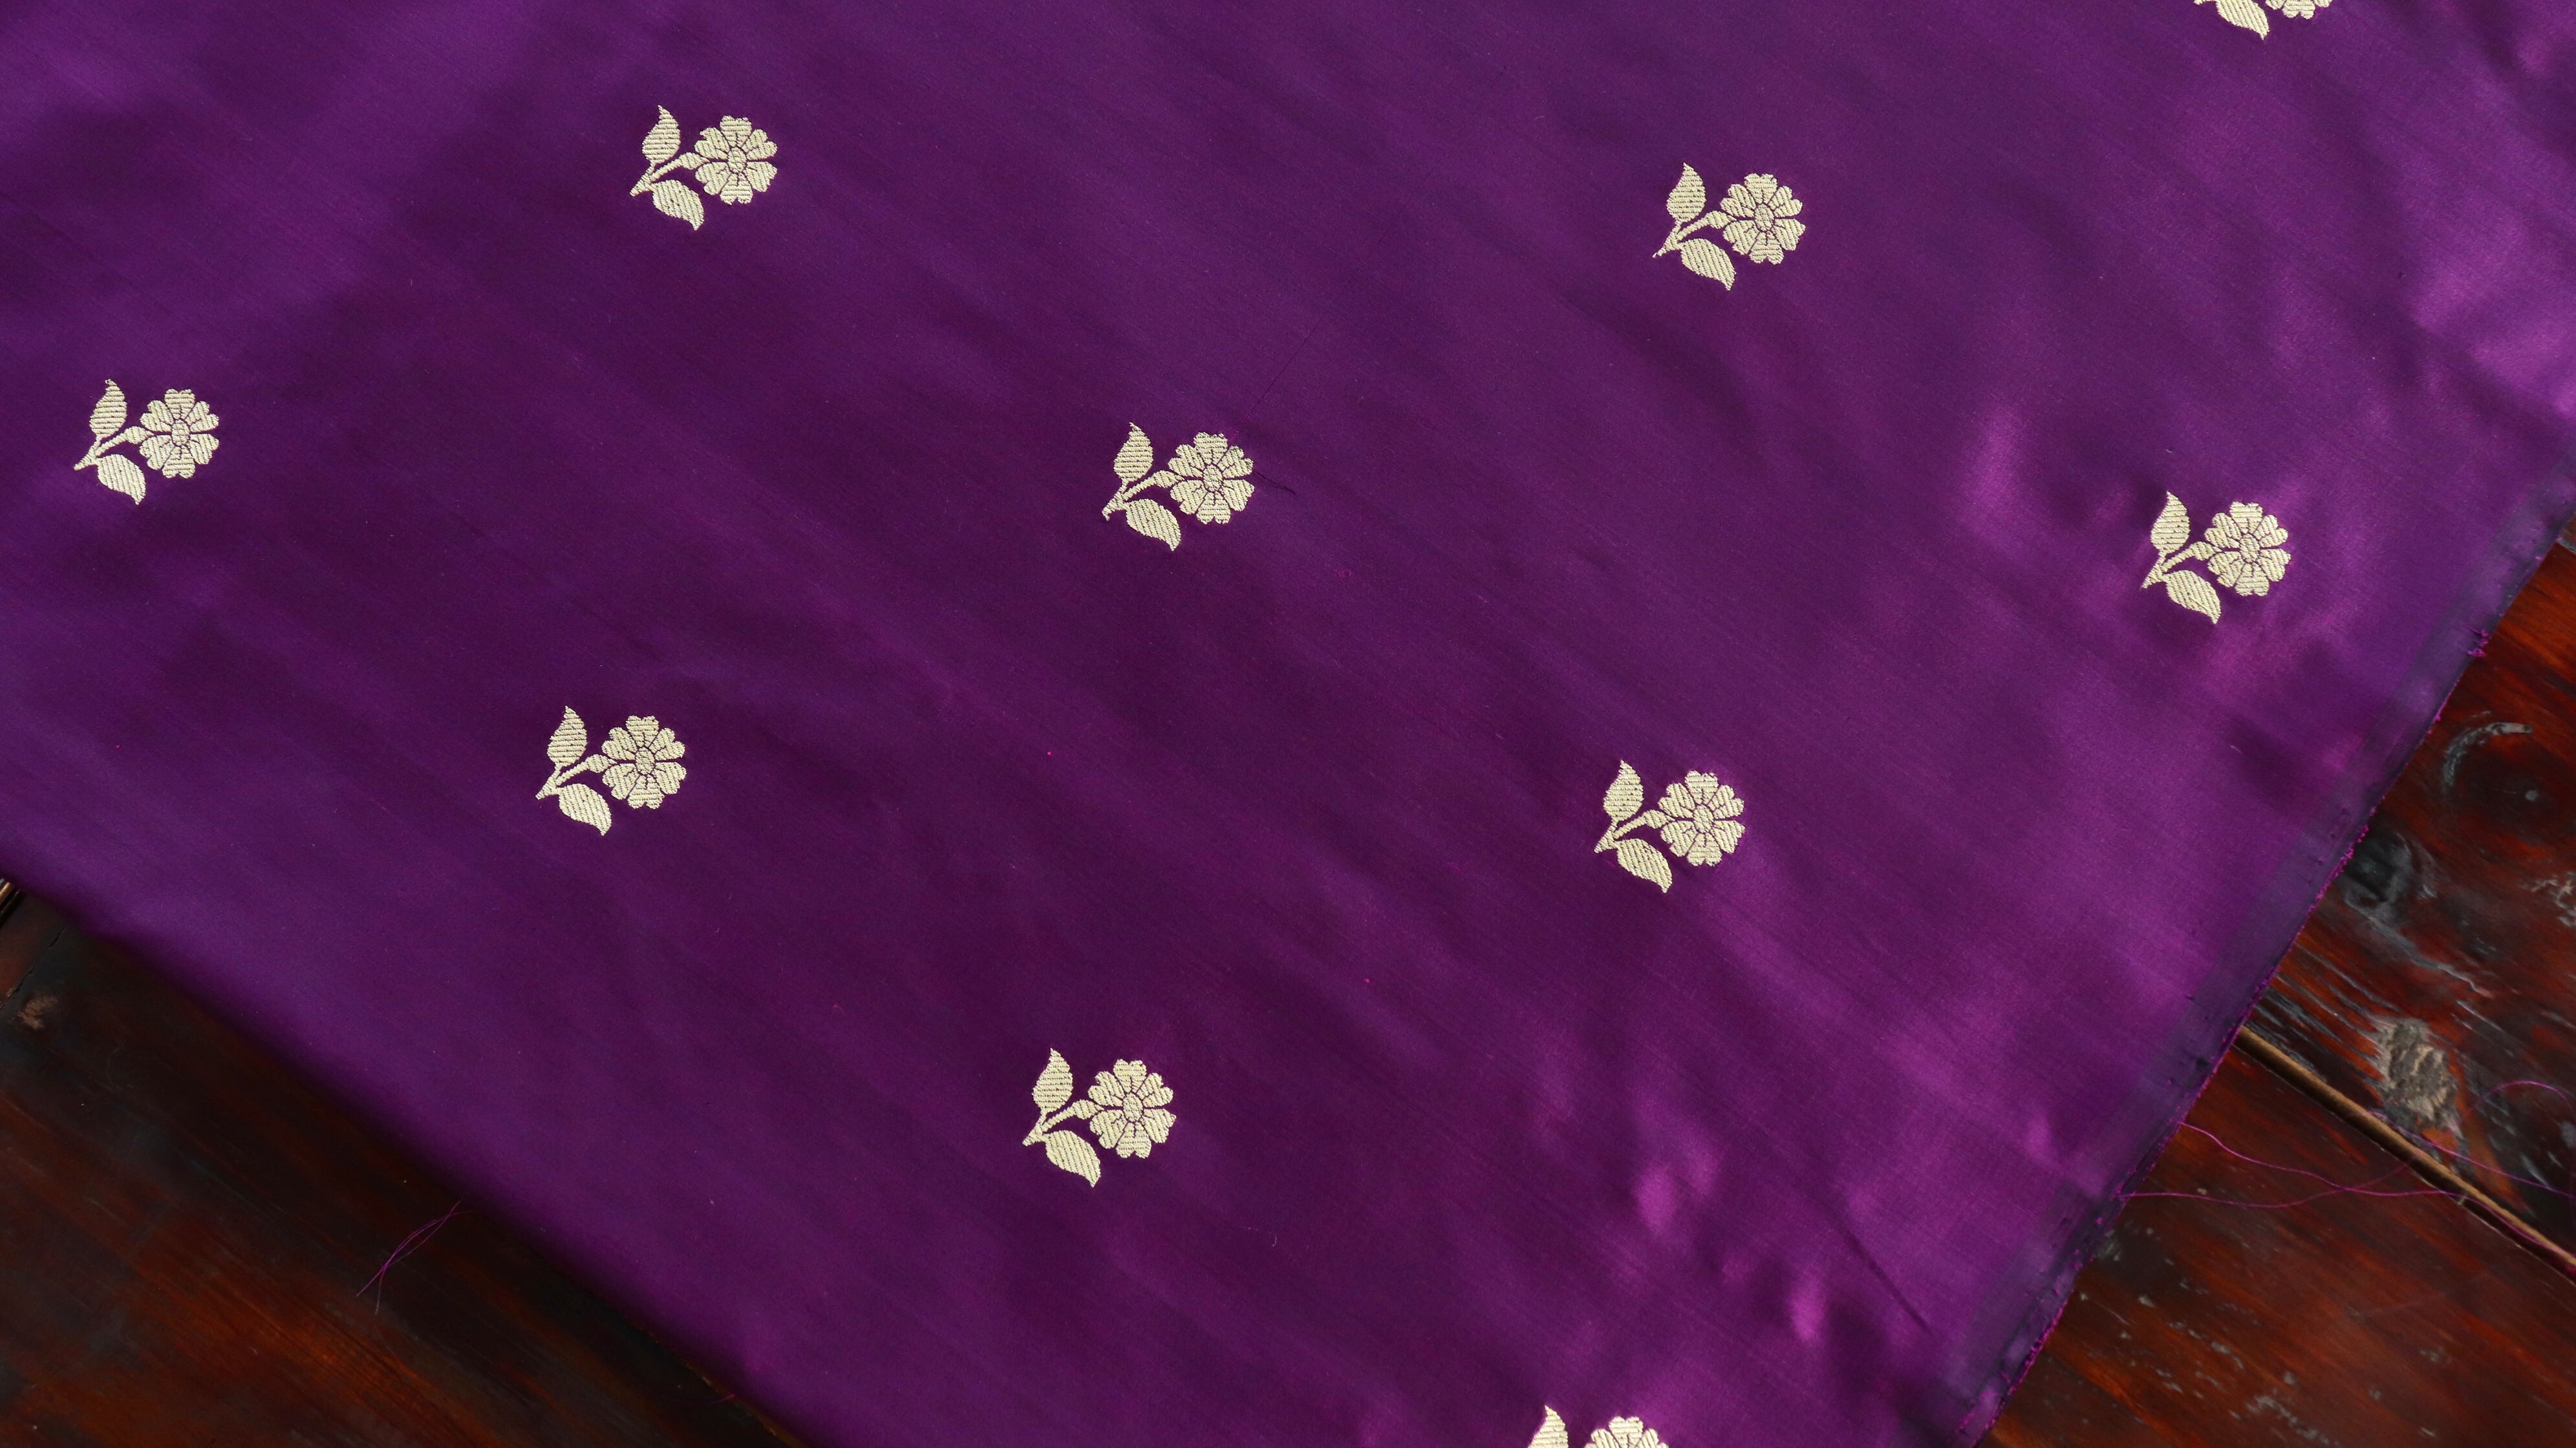 Handloom, Banarasi Handloom Saree, Alfi Saree, Tilfi Saree, Tilfi Saree Banaras, Tilfi, Banarasi Bunkar, Banarasi Bridal Wear, BridalWear, Banarasi Handloom Banarasi Purple Floral Motif Pure Silk Handloom Banarasi Fabric Banarasi Saree